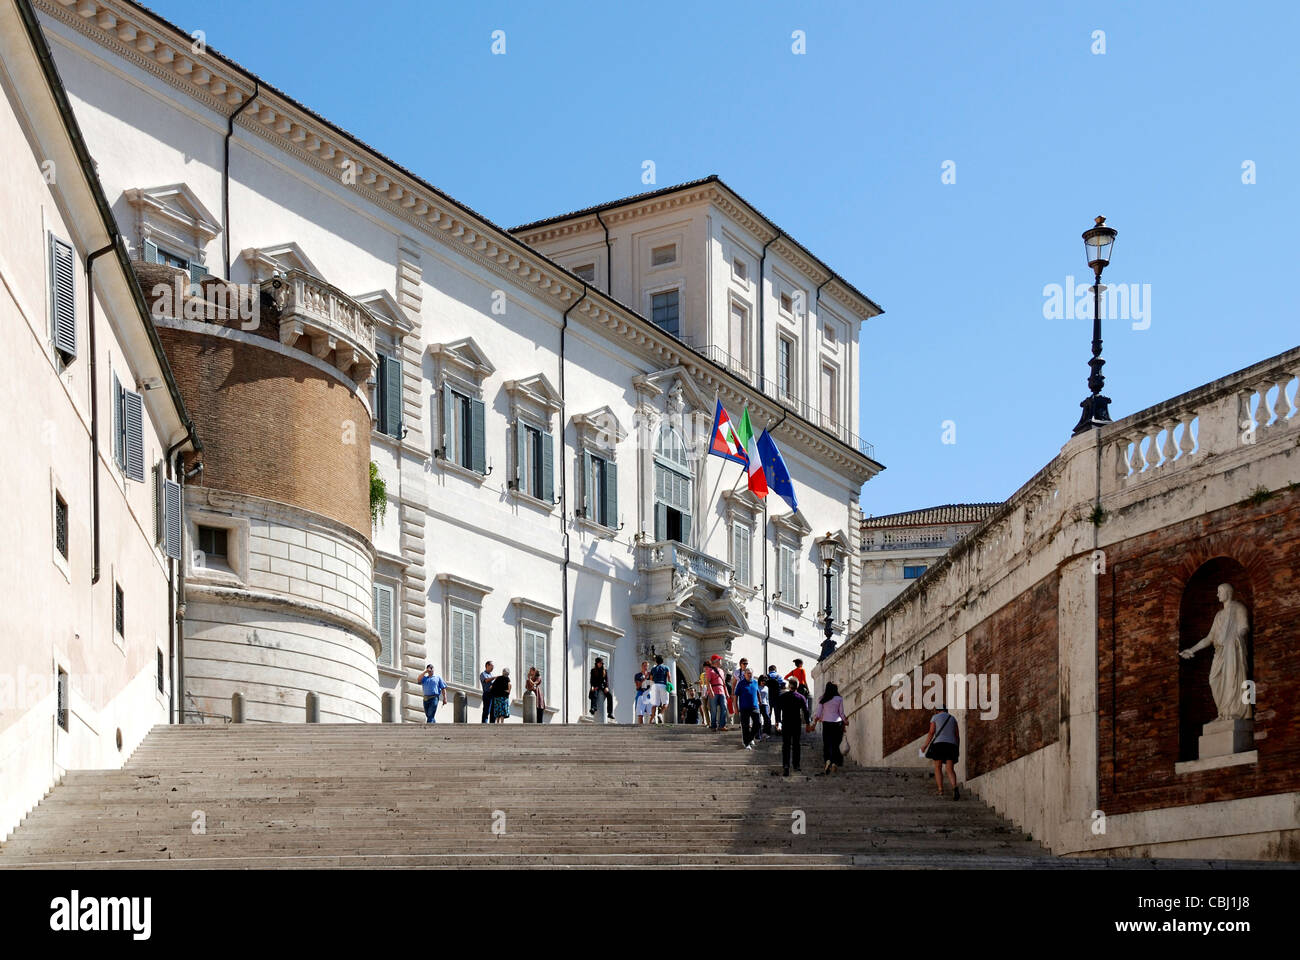 Quirinalspalast in Rom - Residenz des italienischen Staatspräsidenten. Stockfoto